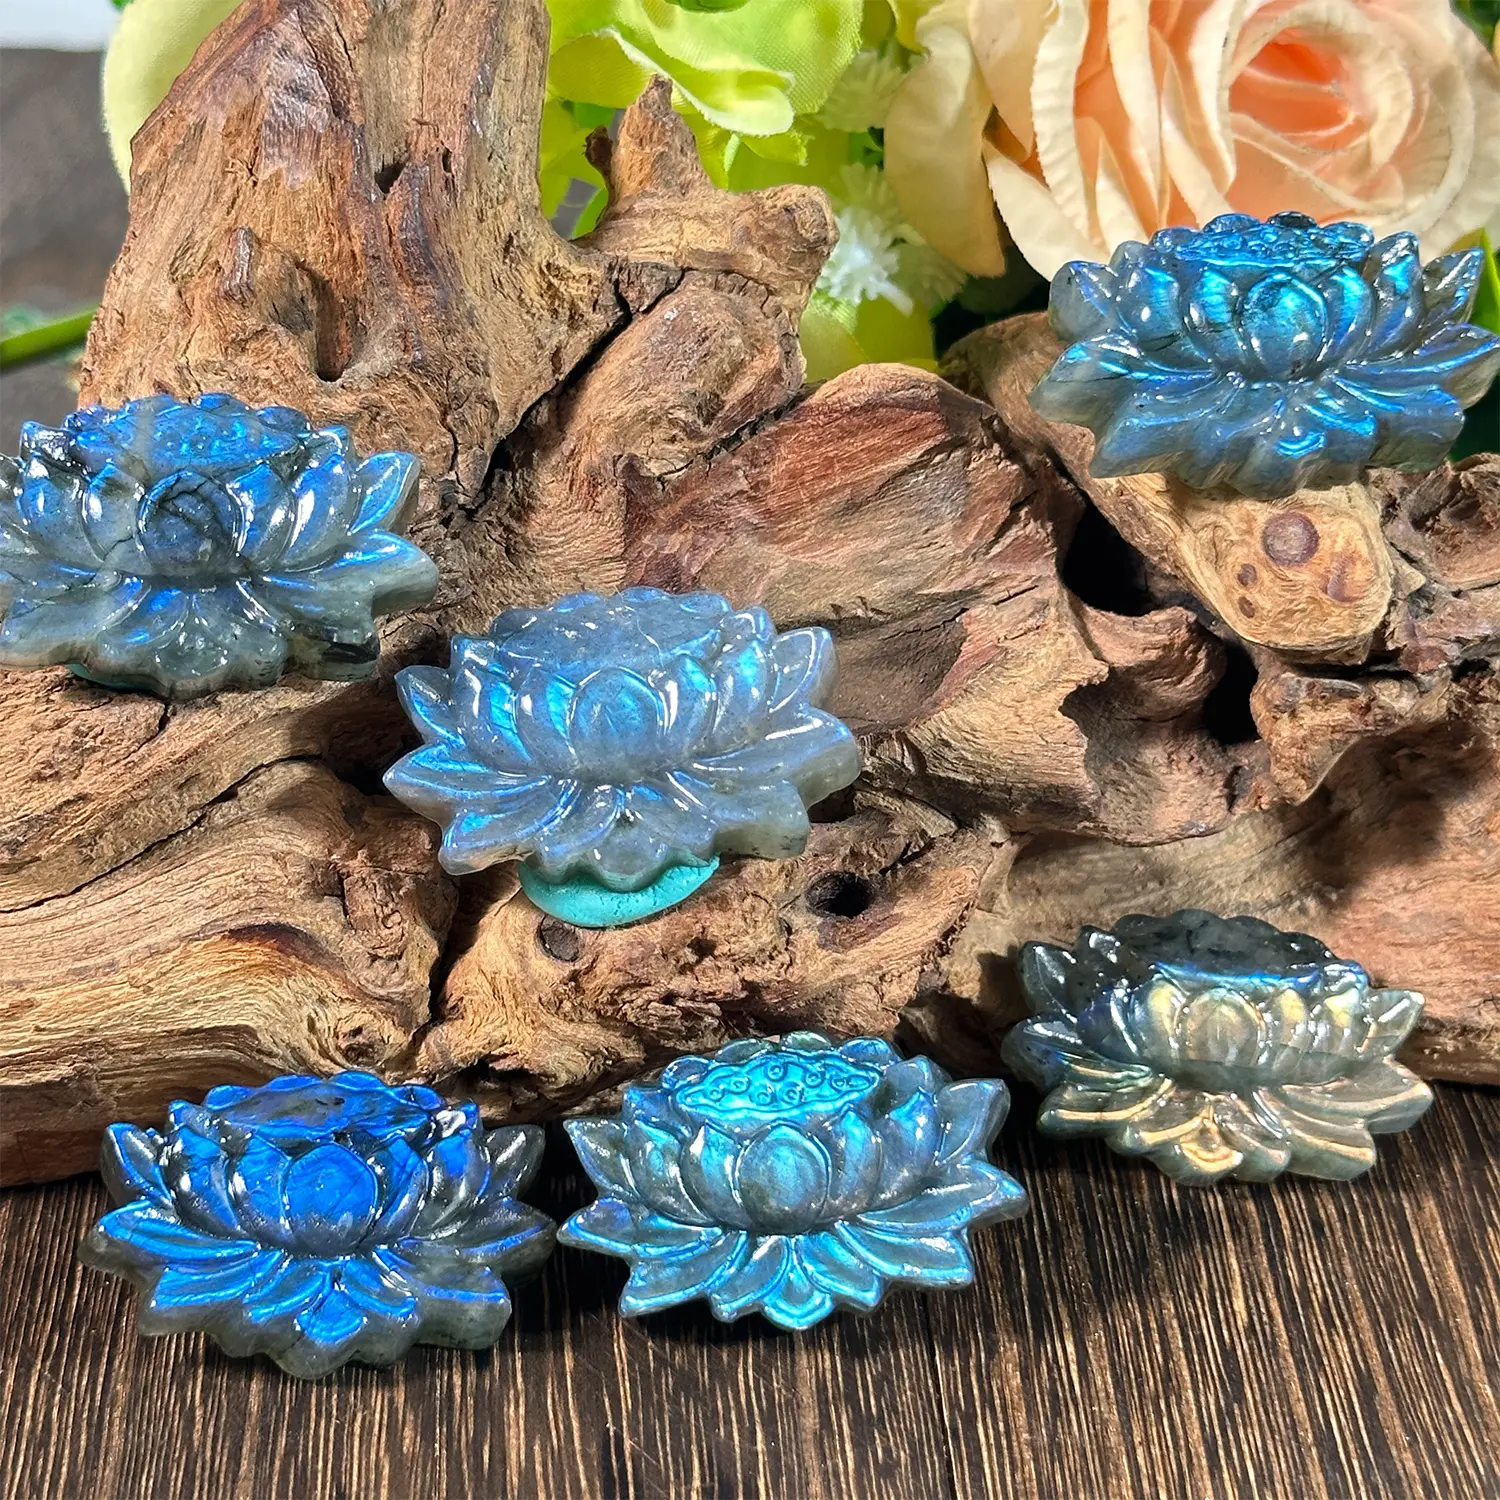 Bulk Hotsale Natuurlijke Hoge Kwaliteit Hand Gesneden Kleine Bloem Labradoriet Blauwe Flash Lotus Kop Houtsnijwerk Voor Decoratie